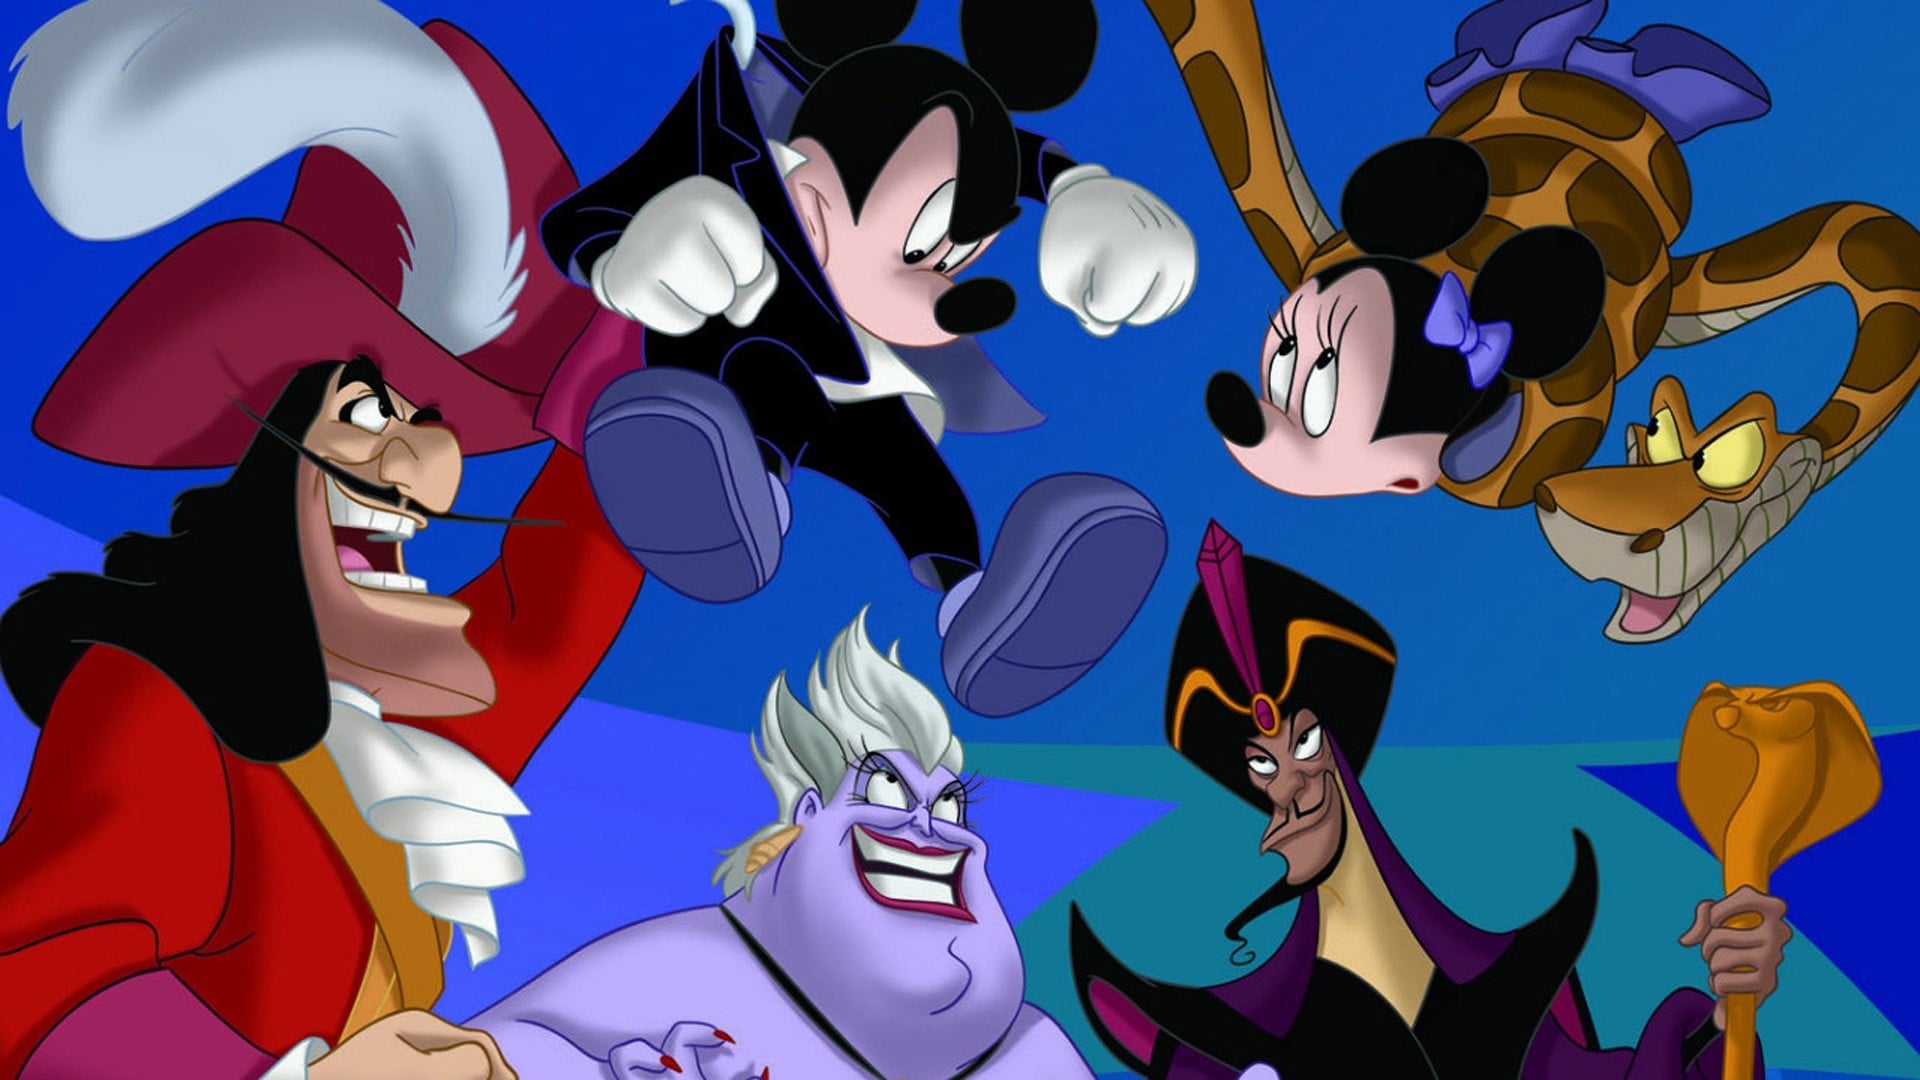 Mickey Mouse: El club de los villanos